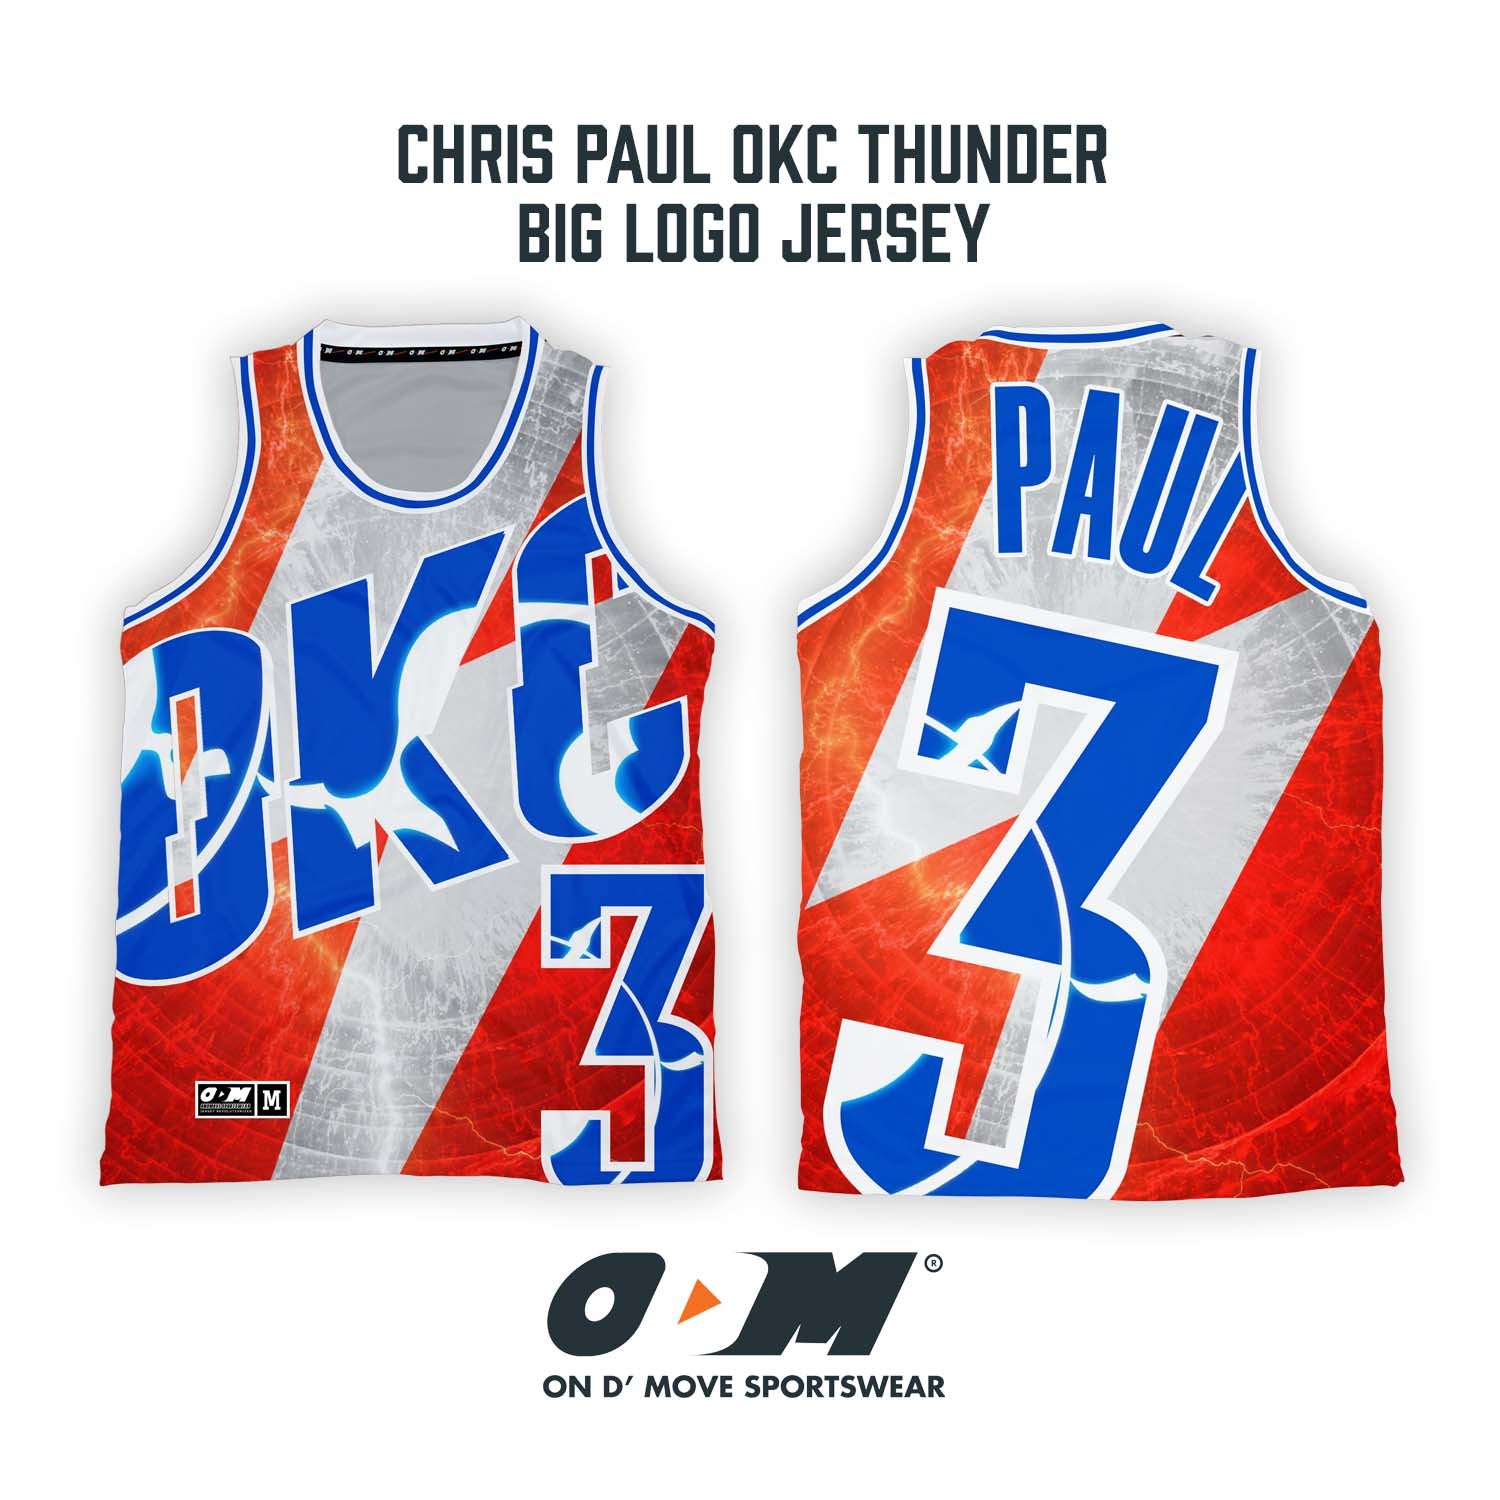 Chris Paul OKC Thunder Big Logo Jersey